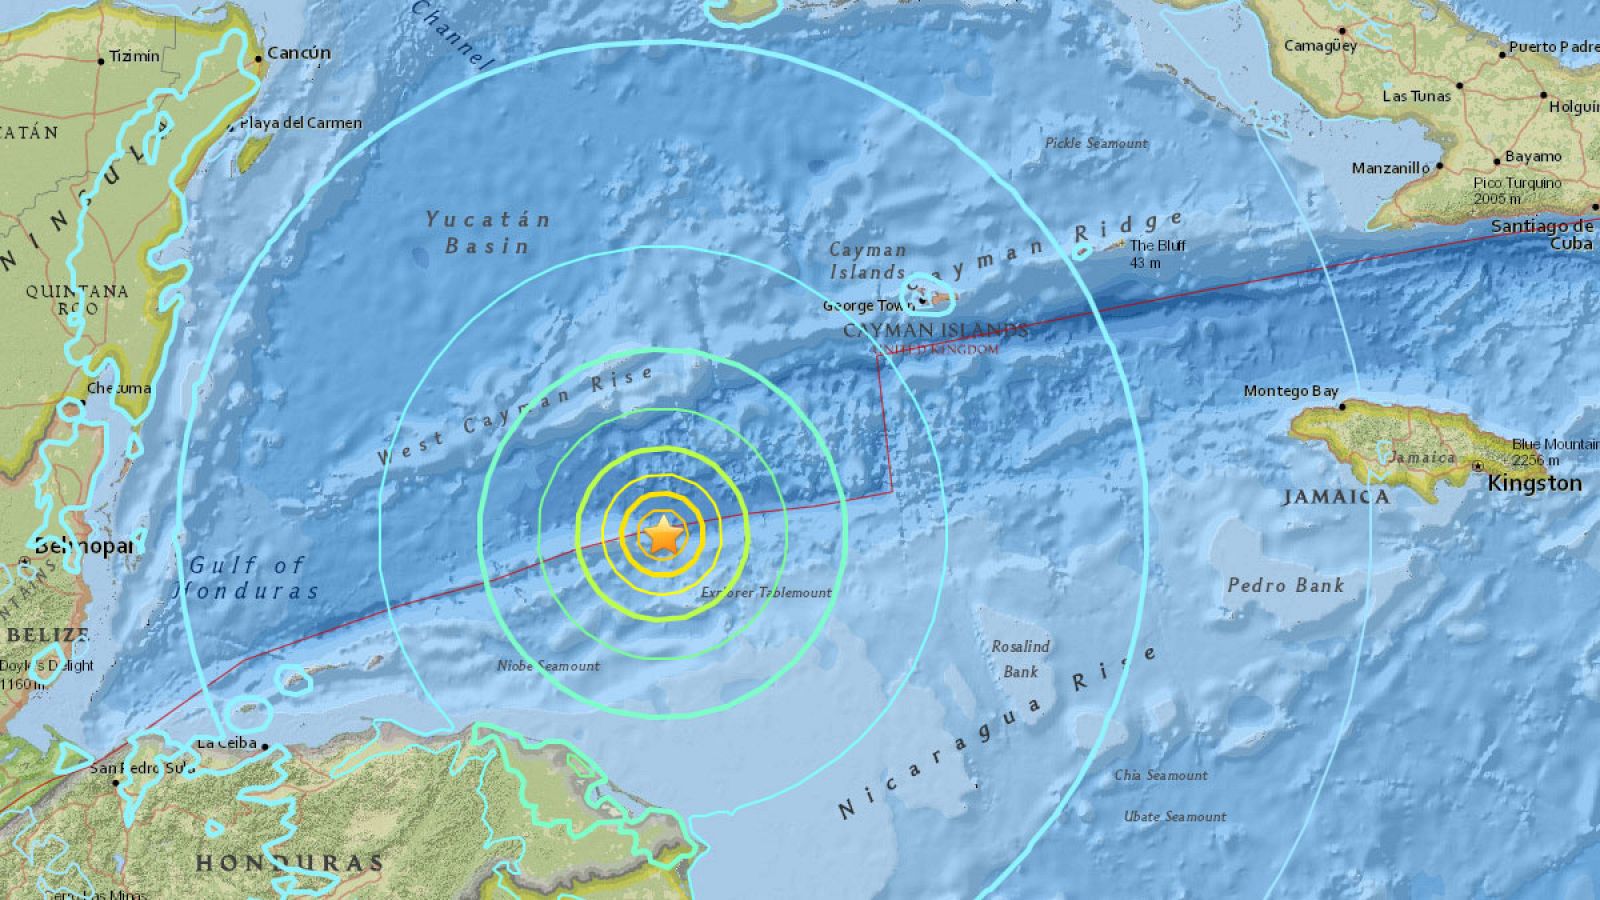 Epicentro del terremoto de magnitud 7,6 que ha sacudido el Mar Caribe, según los mapas del Servicio Geológico de EE.UU.